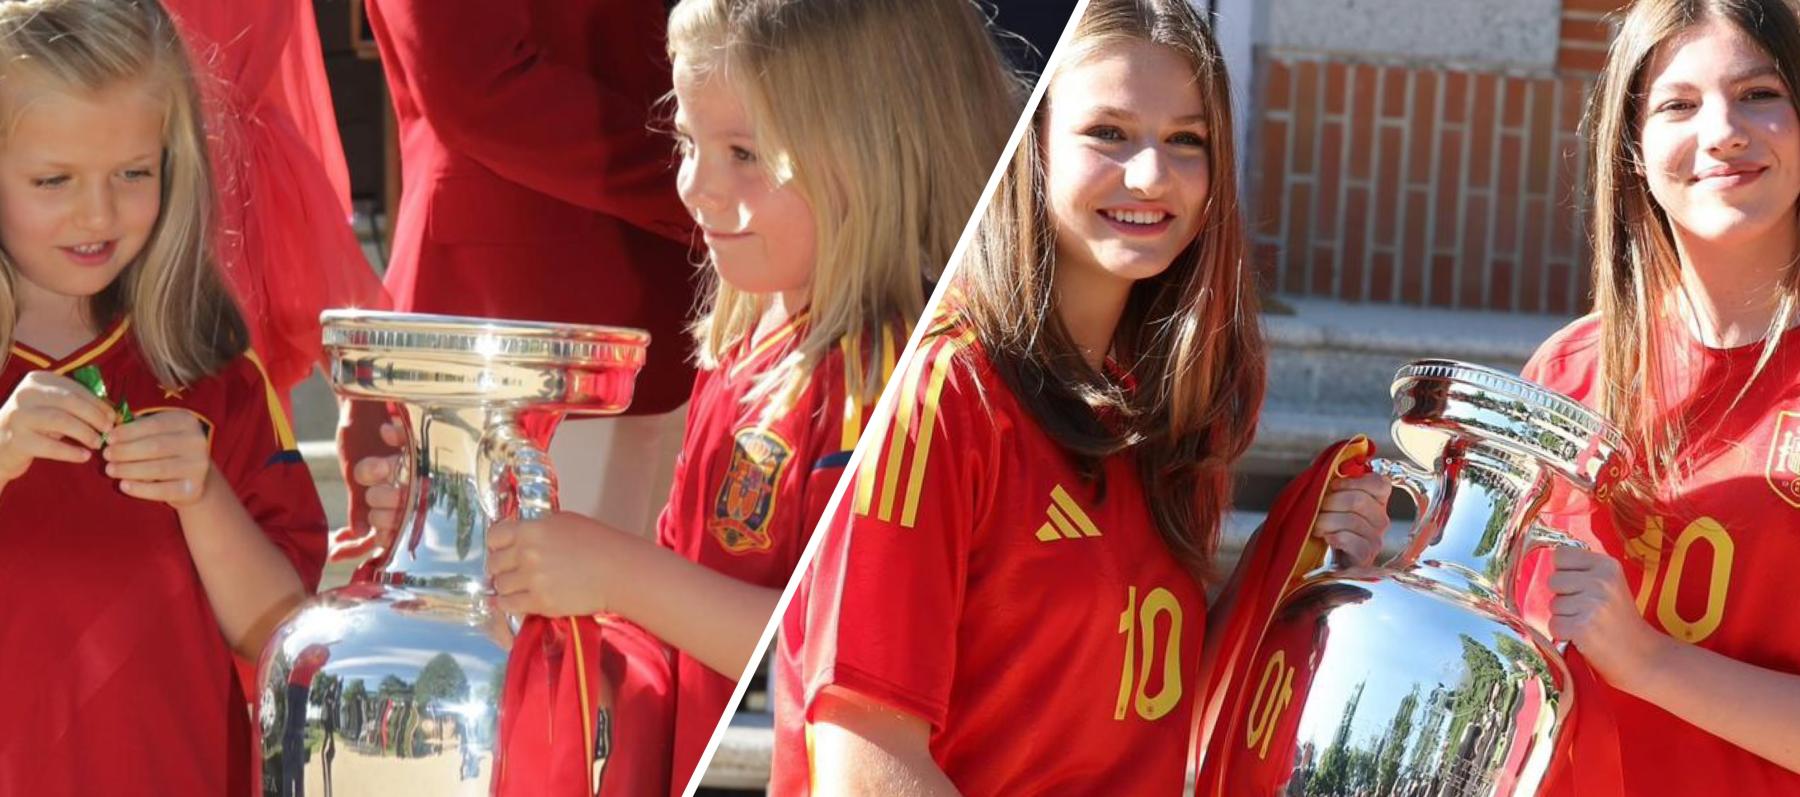 ليونور أميرة أسبانيا وشقيقتها صوفيا - إنستغرام